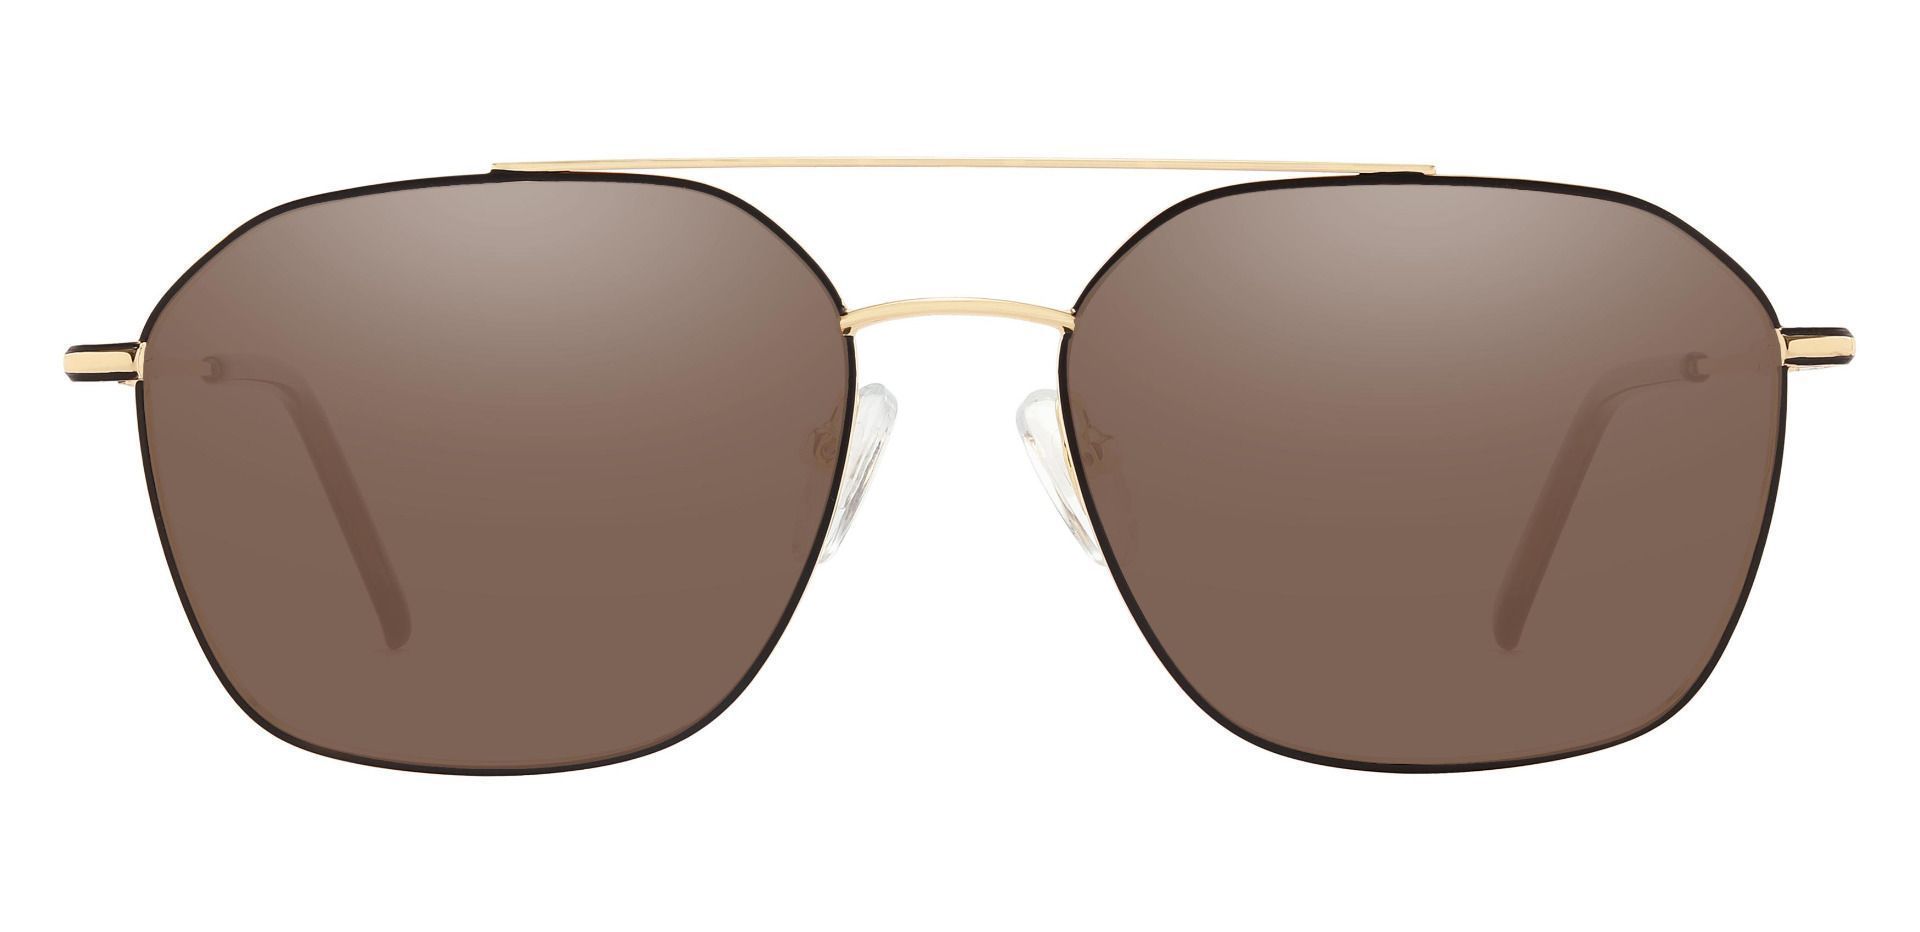 Harvey Aviator Progressive Sunglasses - Gold Frame With Brown Lenses